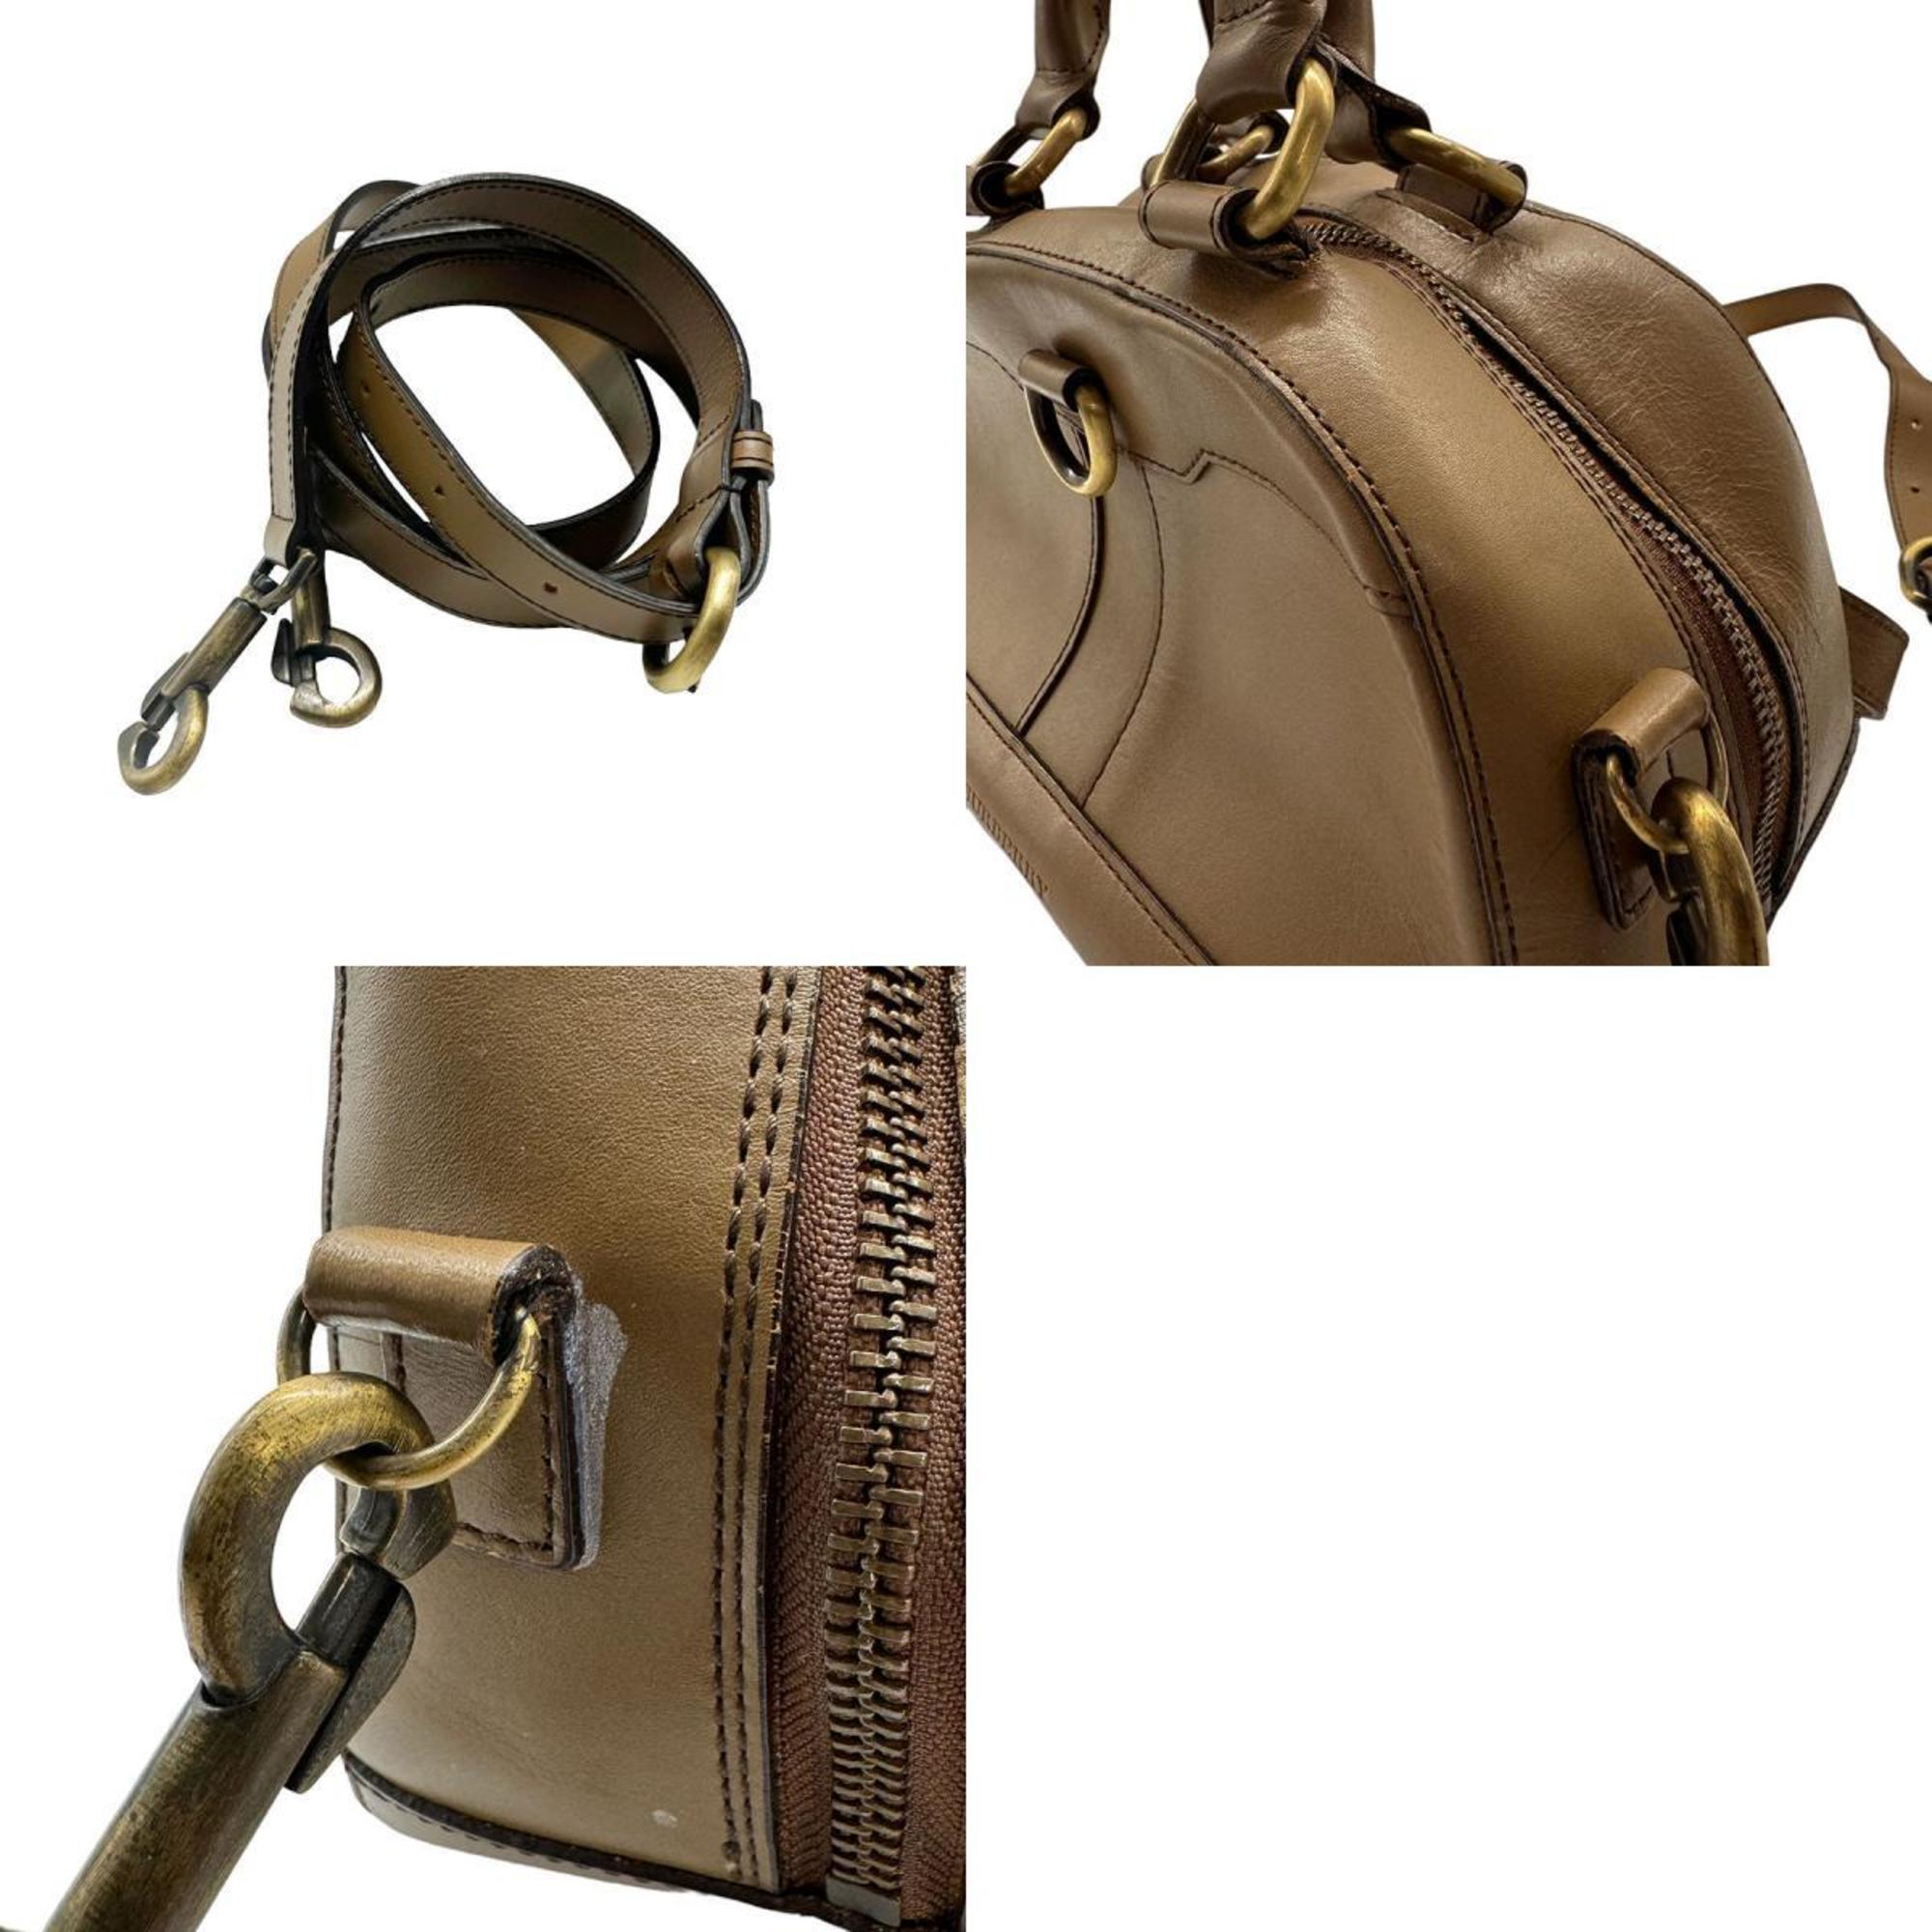 Burberry handbag shoulder bag leather brown ladies z0439